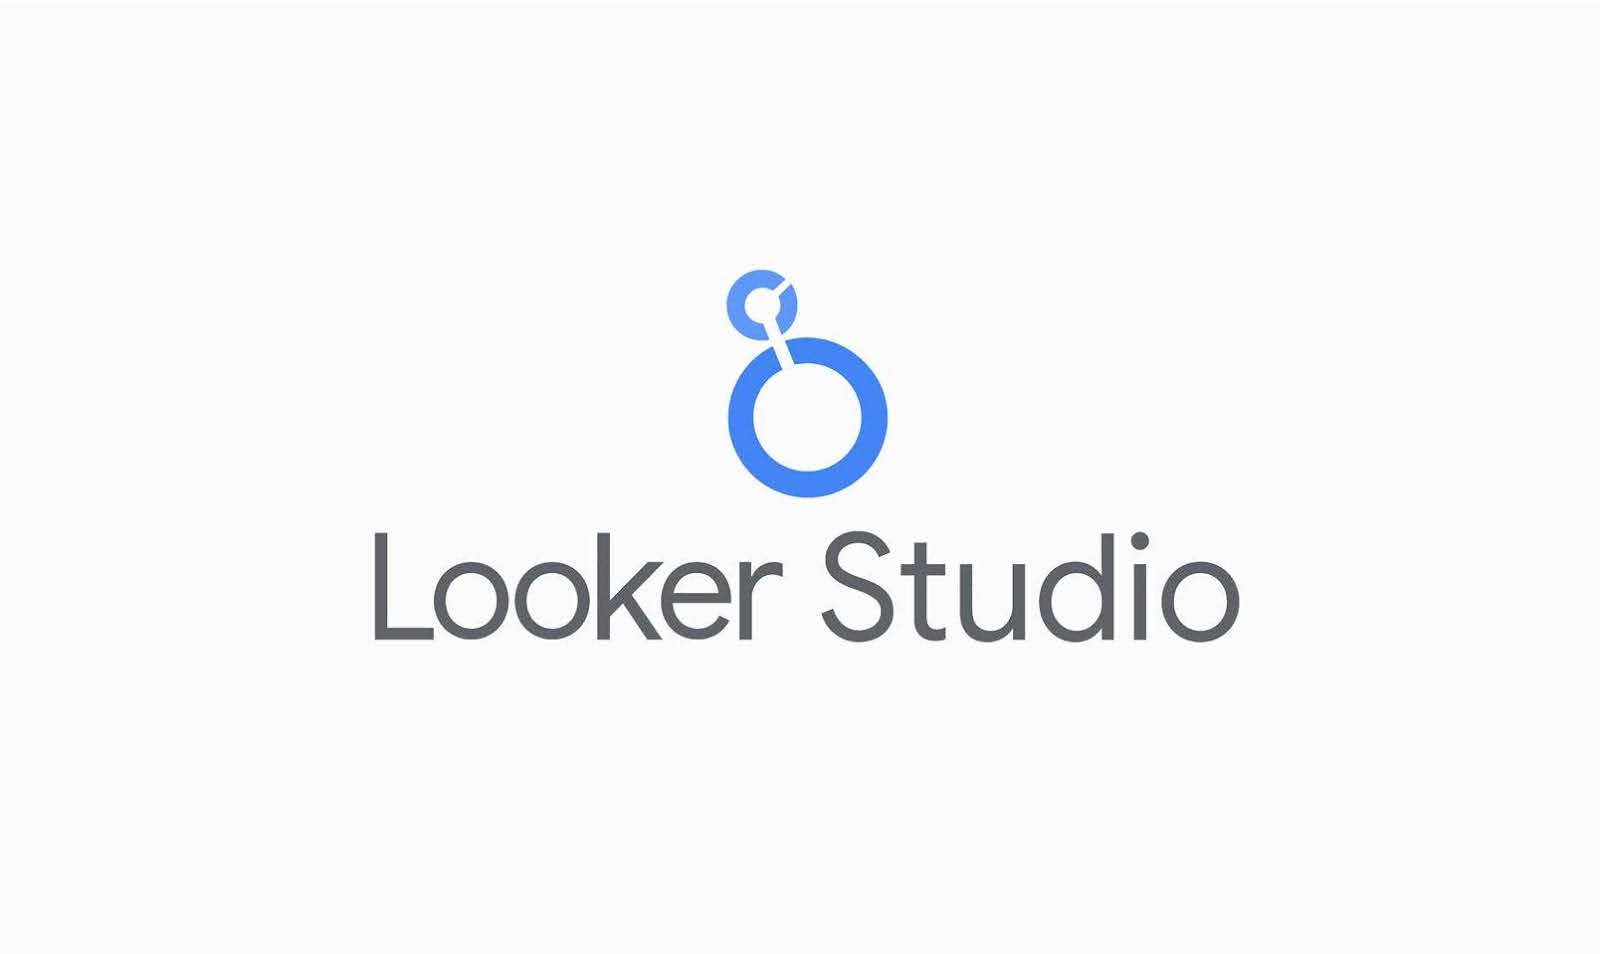 Kompletny poradnik Looker Studio dla początkujących